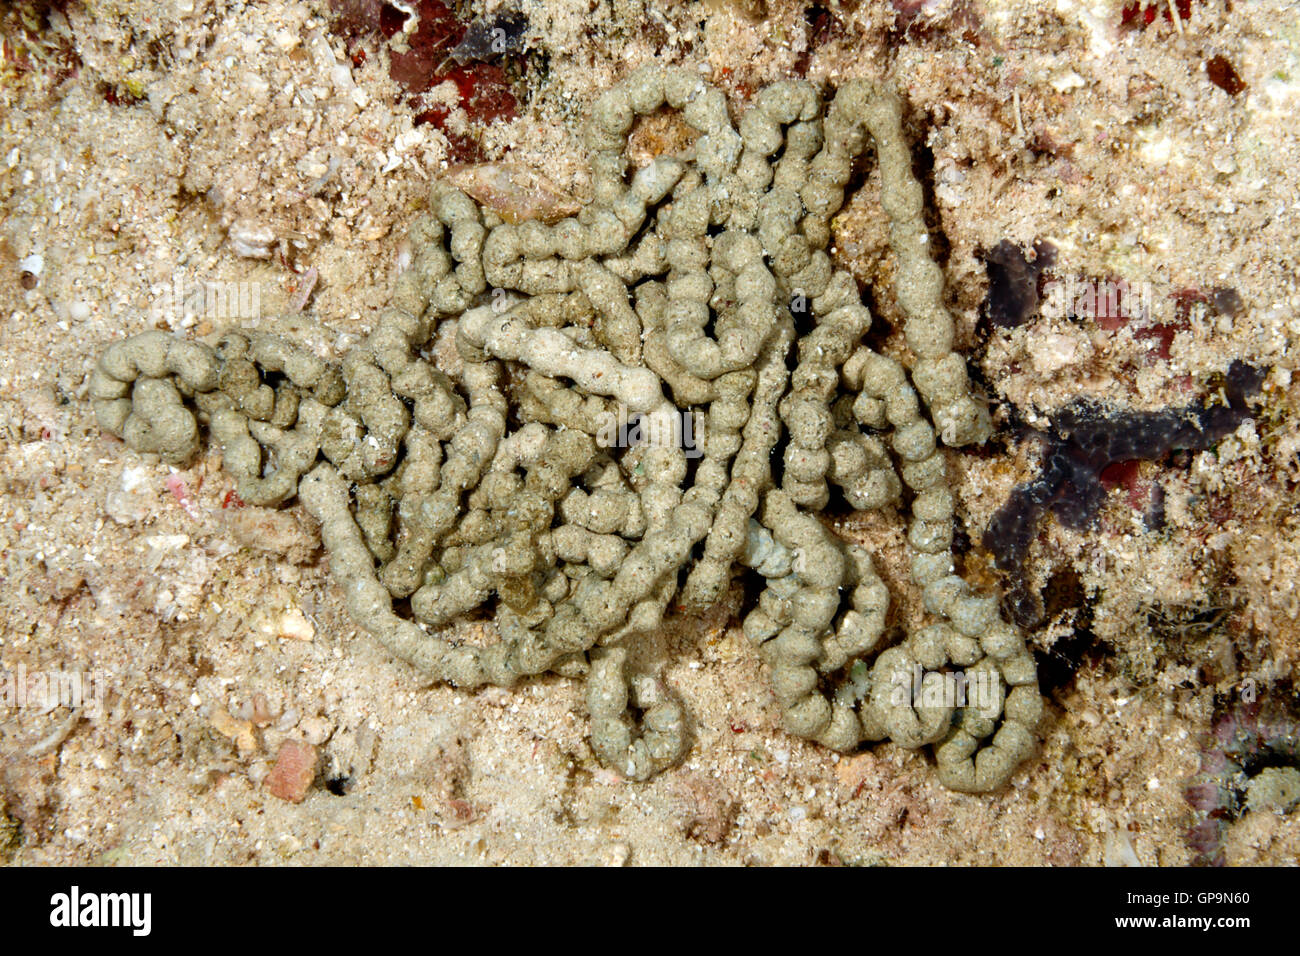 Egesta du concombre de mer, Pearsonothuria graeffei, précédemment Bohadschia graeffei. Banque D'Images